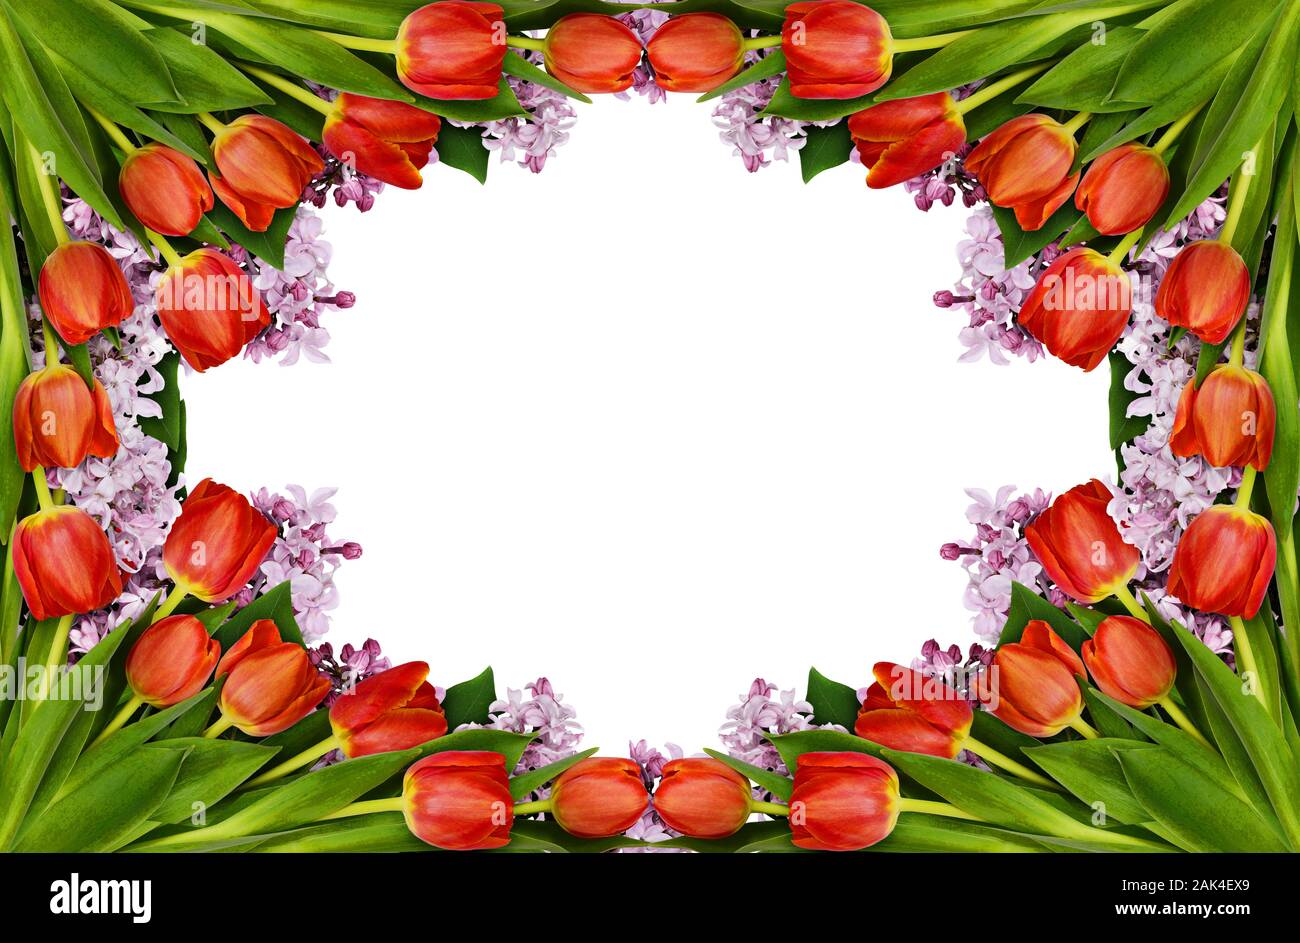 Tulipes rouges et lilac flowers frame isolé sur fond blanc. Mise à plat. Banque D'Images